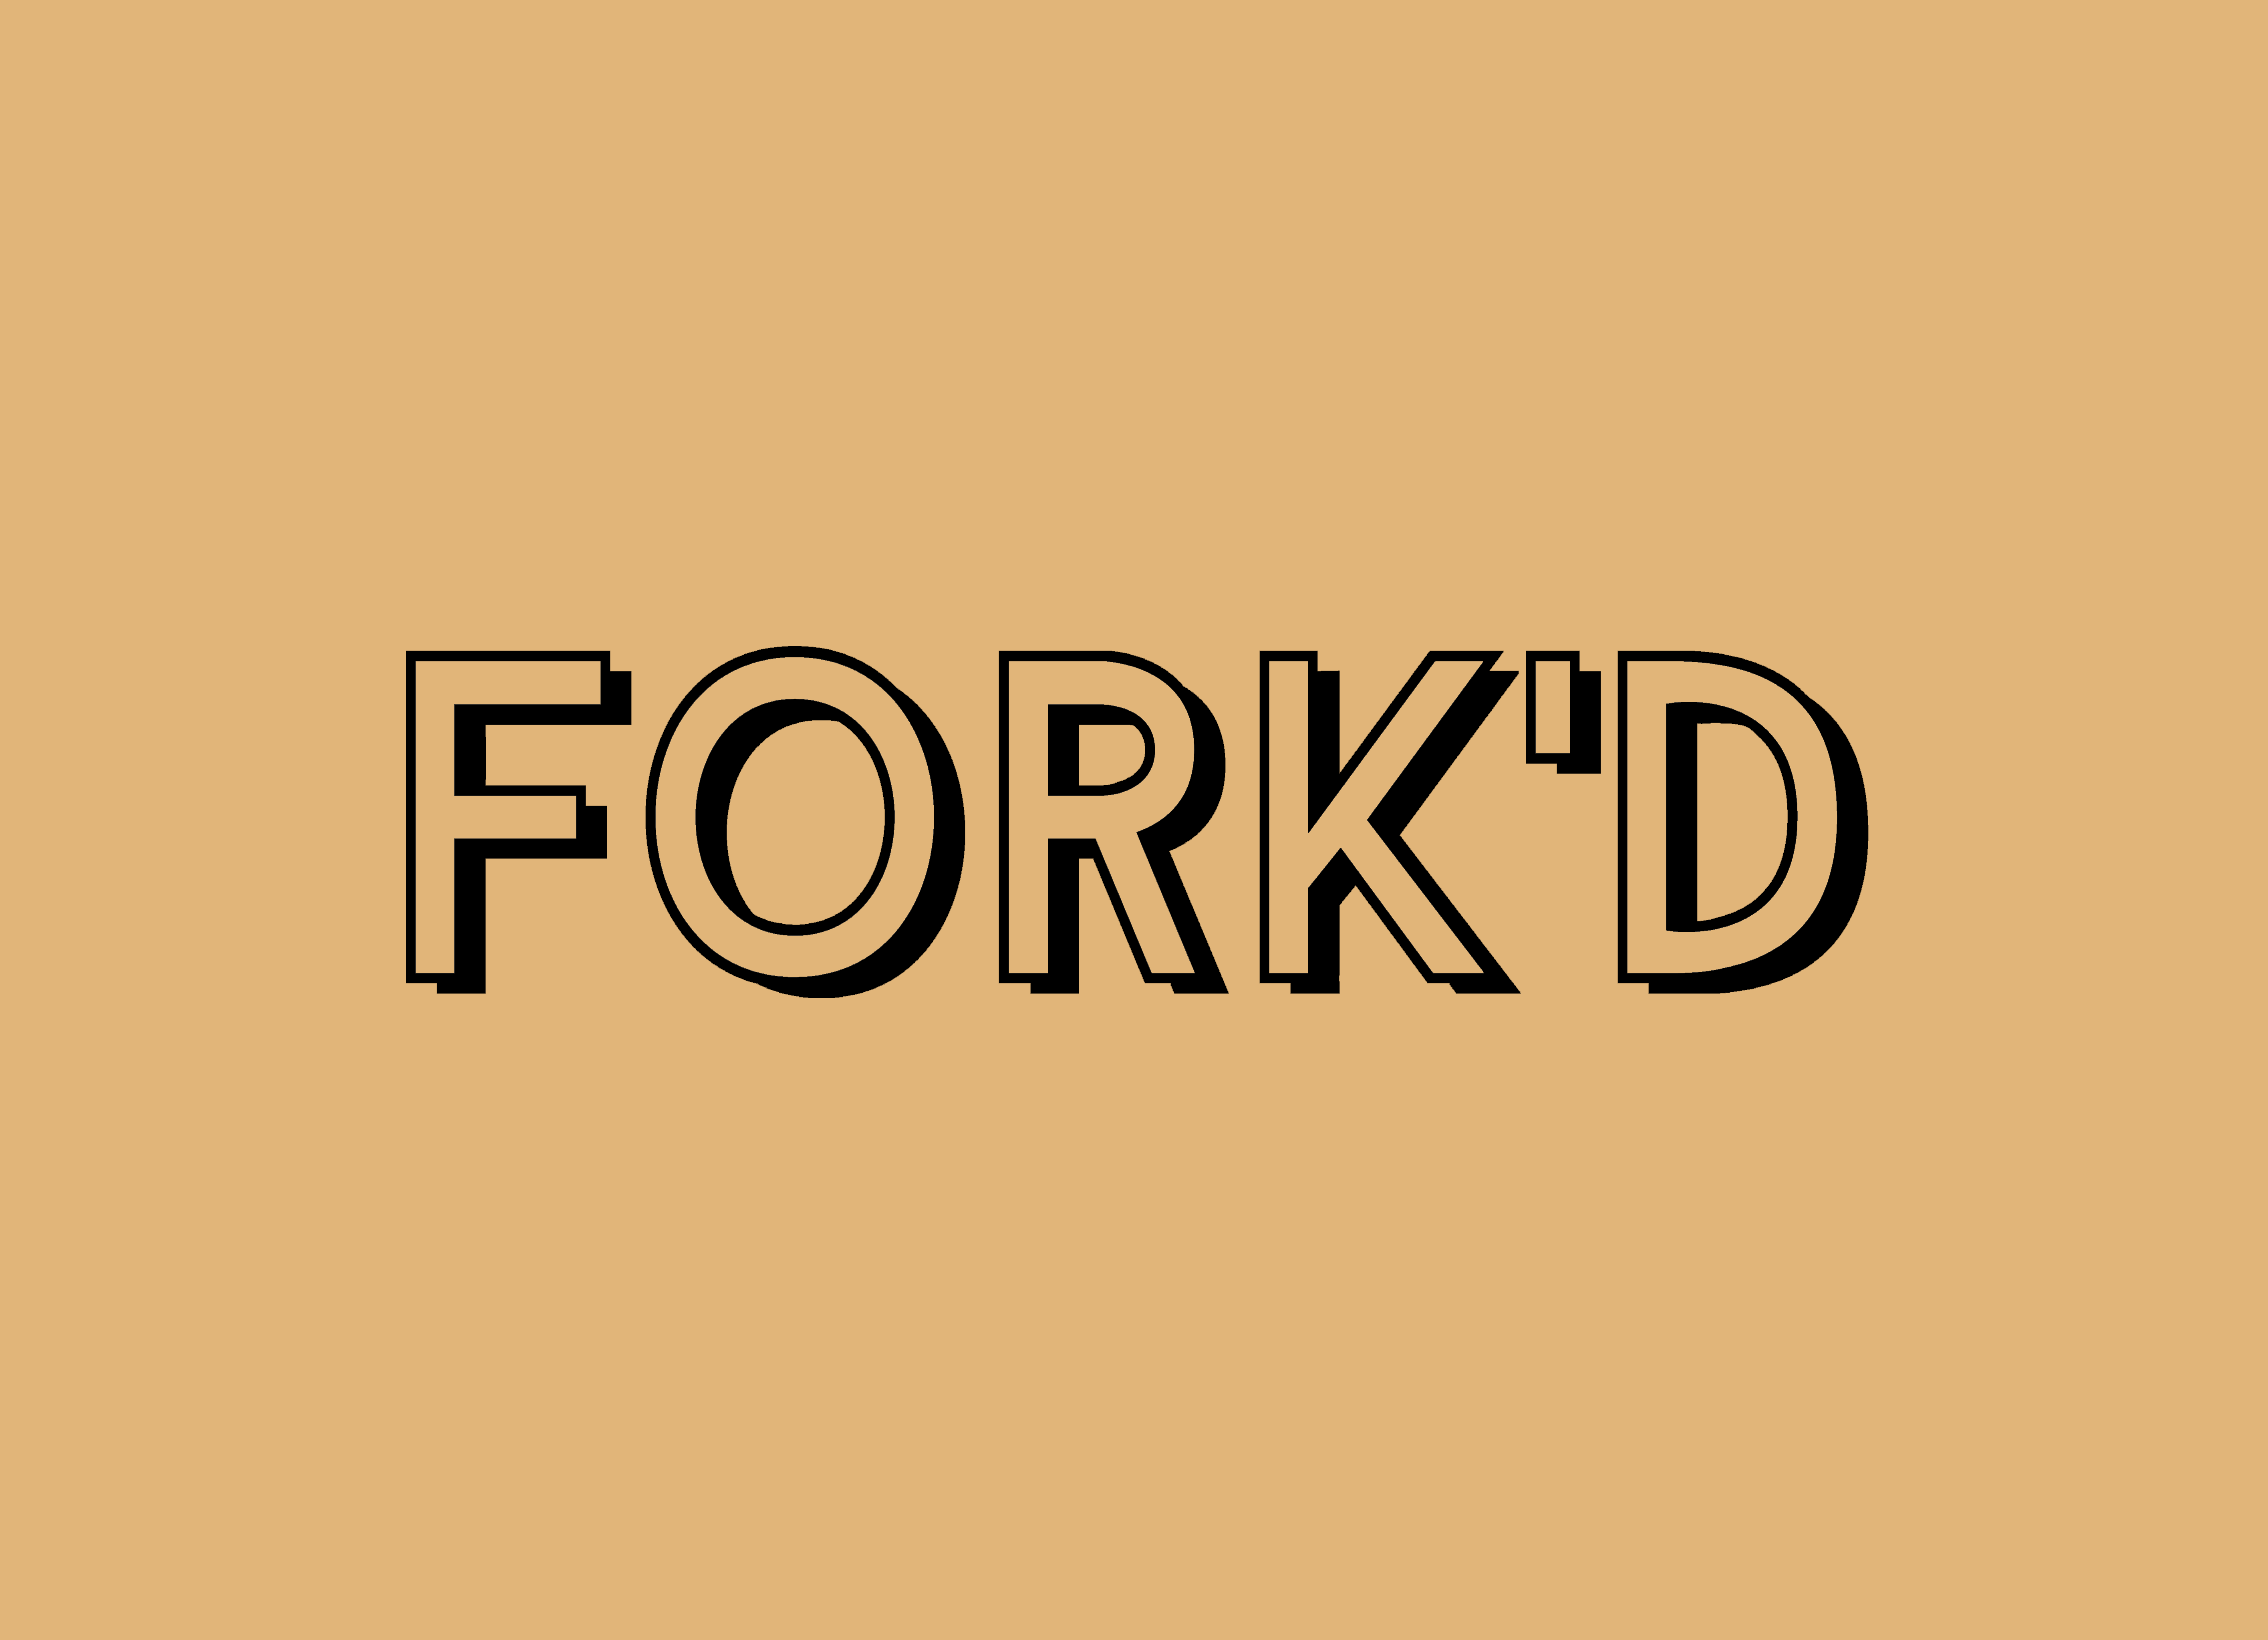 Fork’d Meals